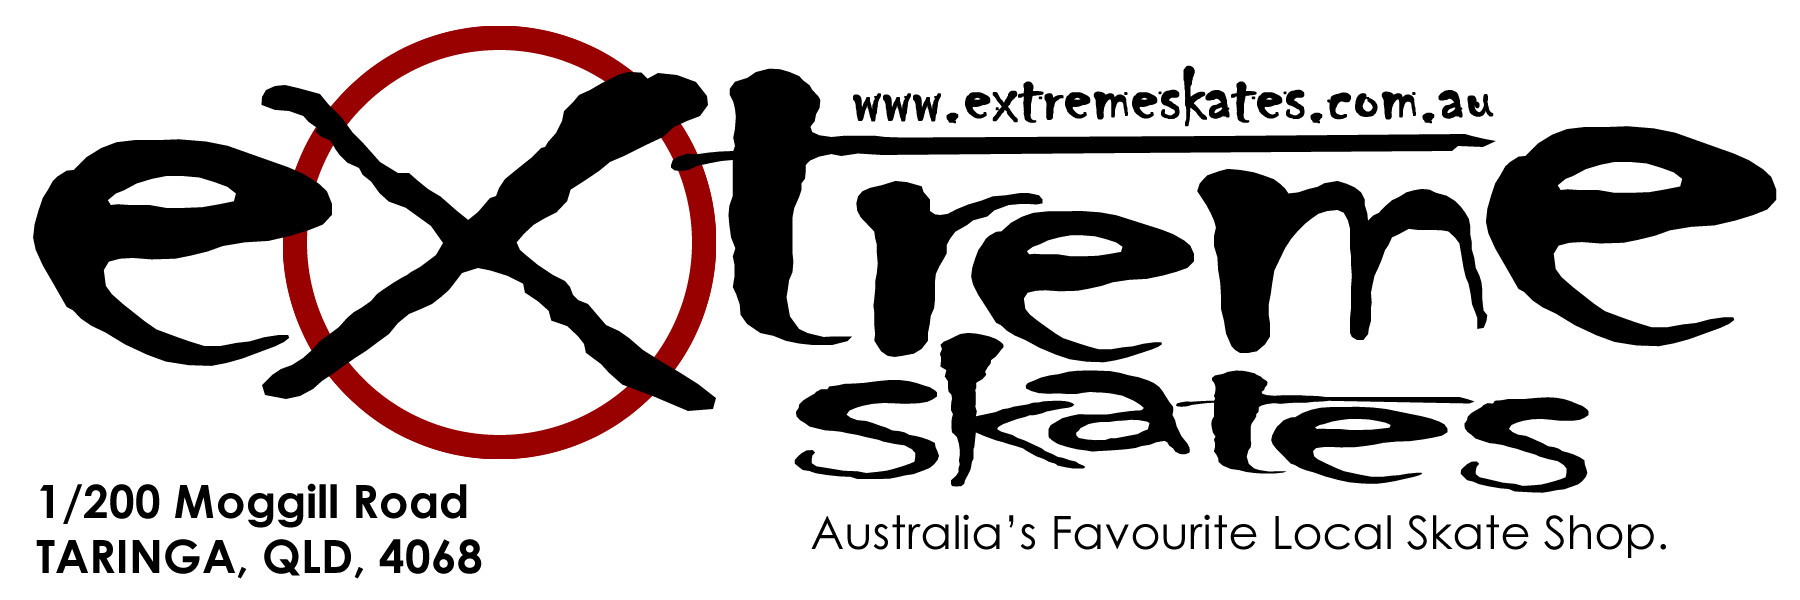 extreme-skates-logo.png